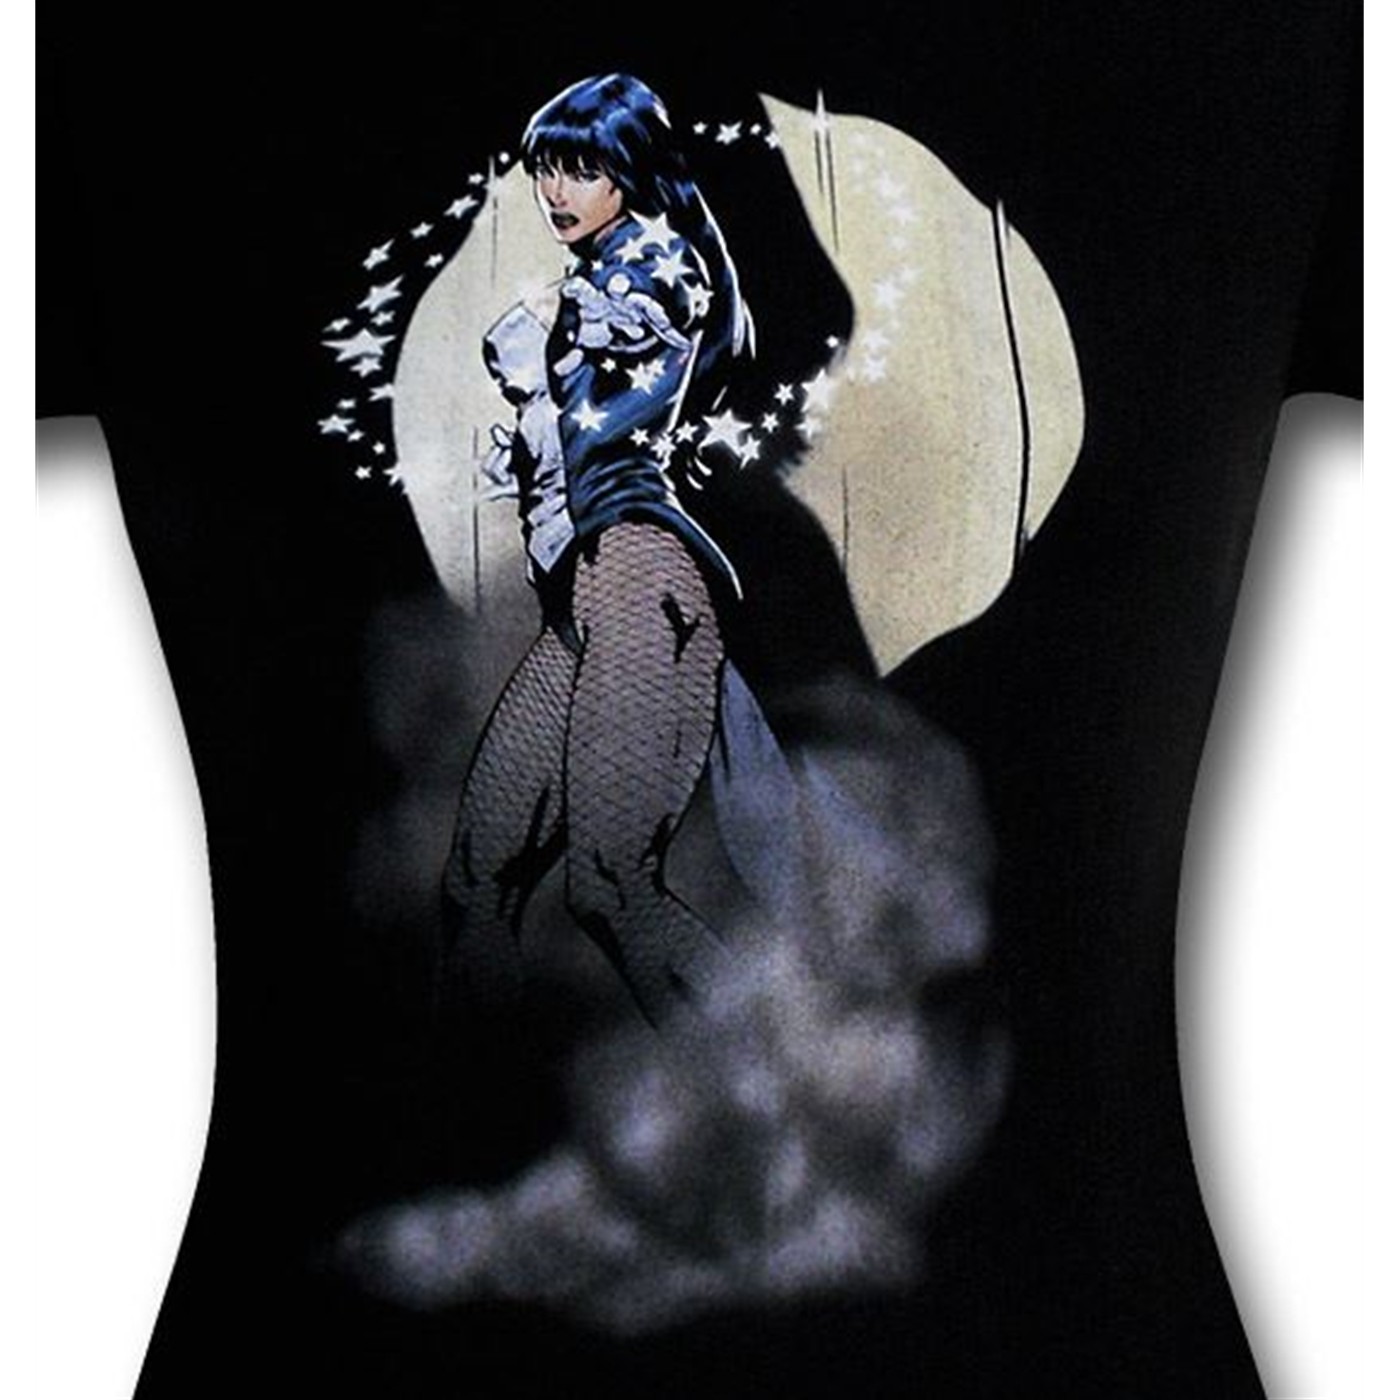 Zatanna Illusion Women's T-Shirt